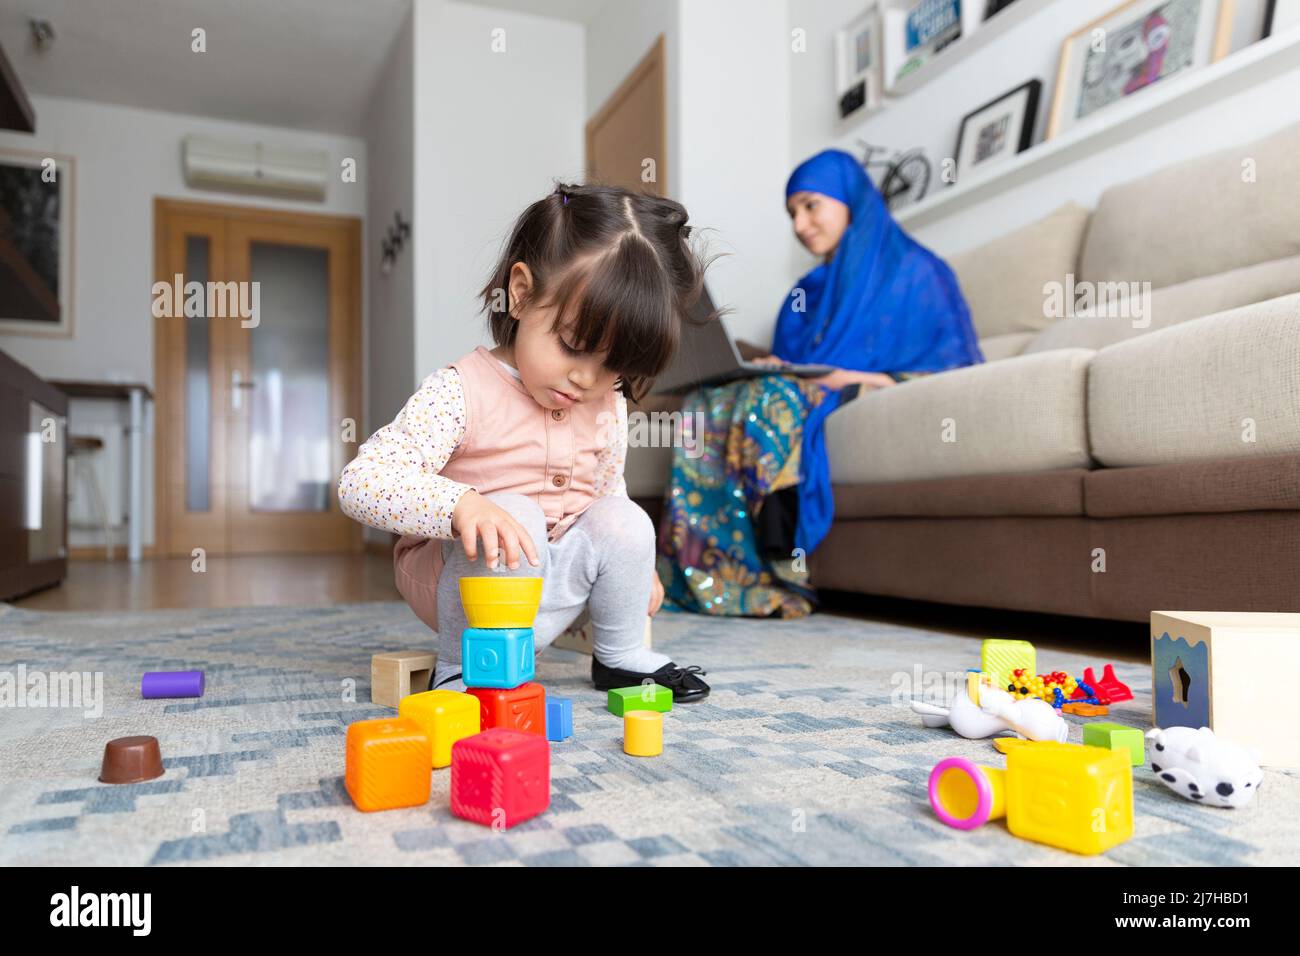 Konzept der alleinerziehenden Familie. Kleines Kind spielt, während eine junge muslimische Frau von zu Hause aus mit einem Laptop arbeitet. Stockfoto